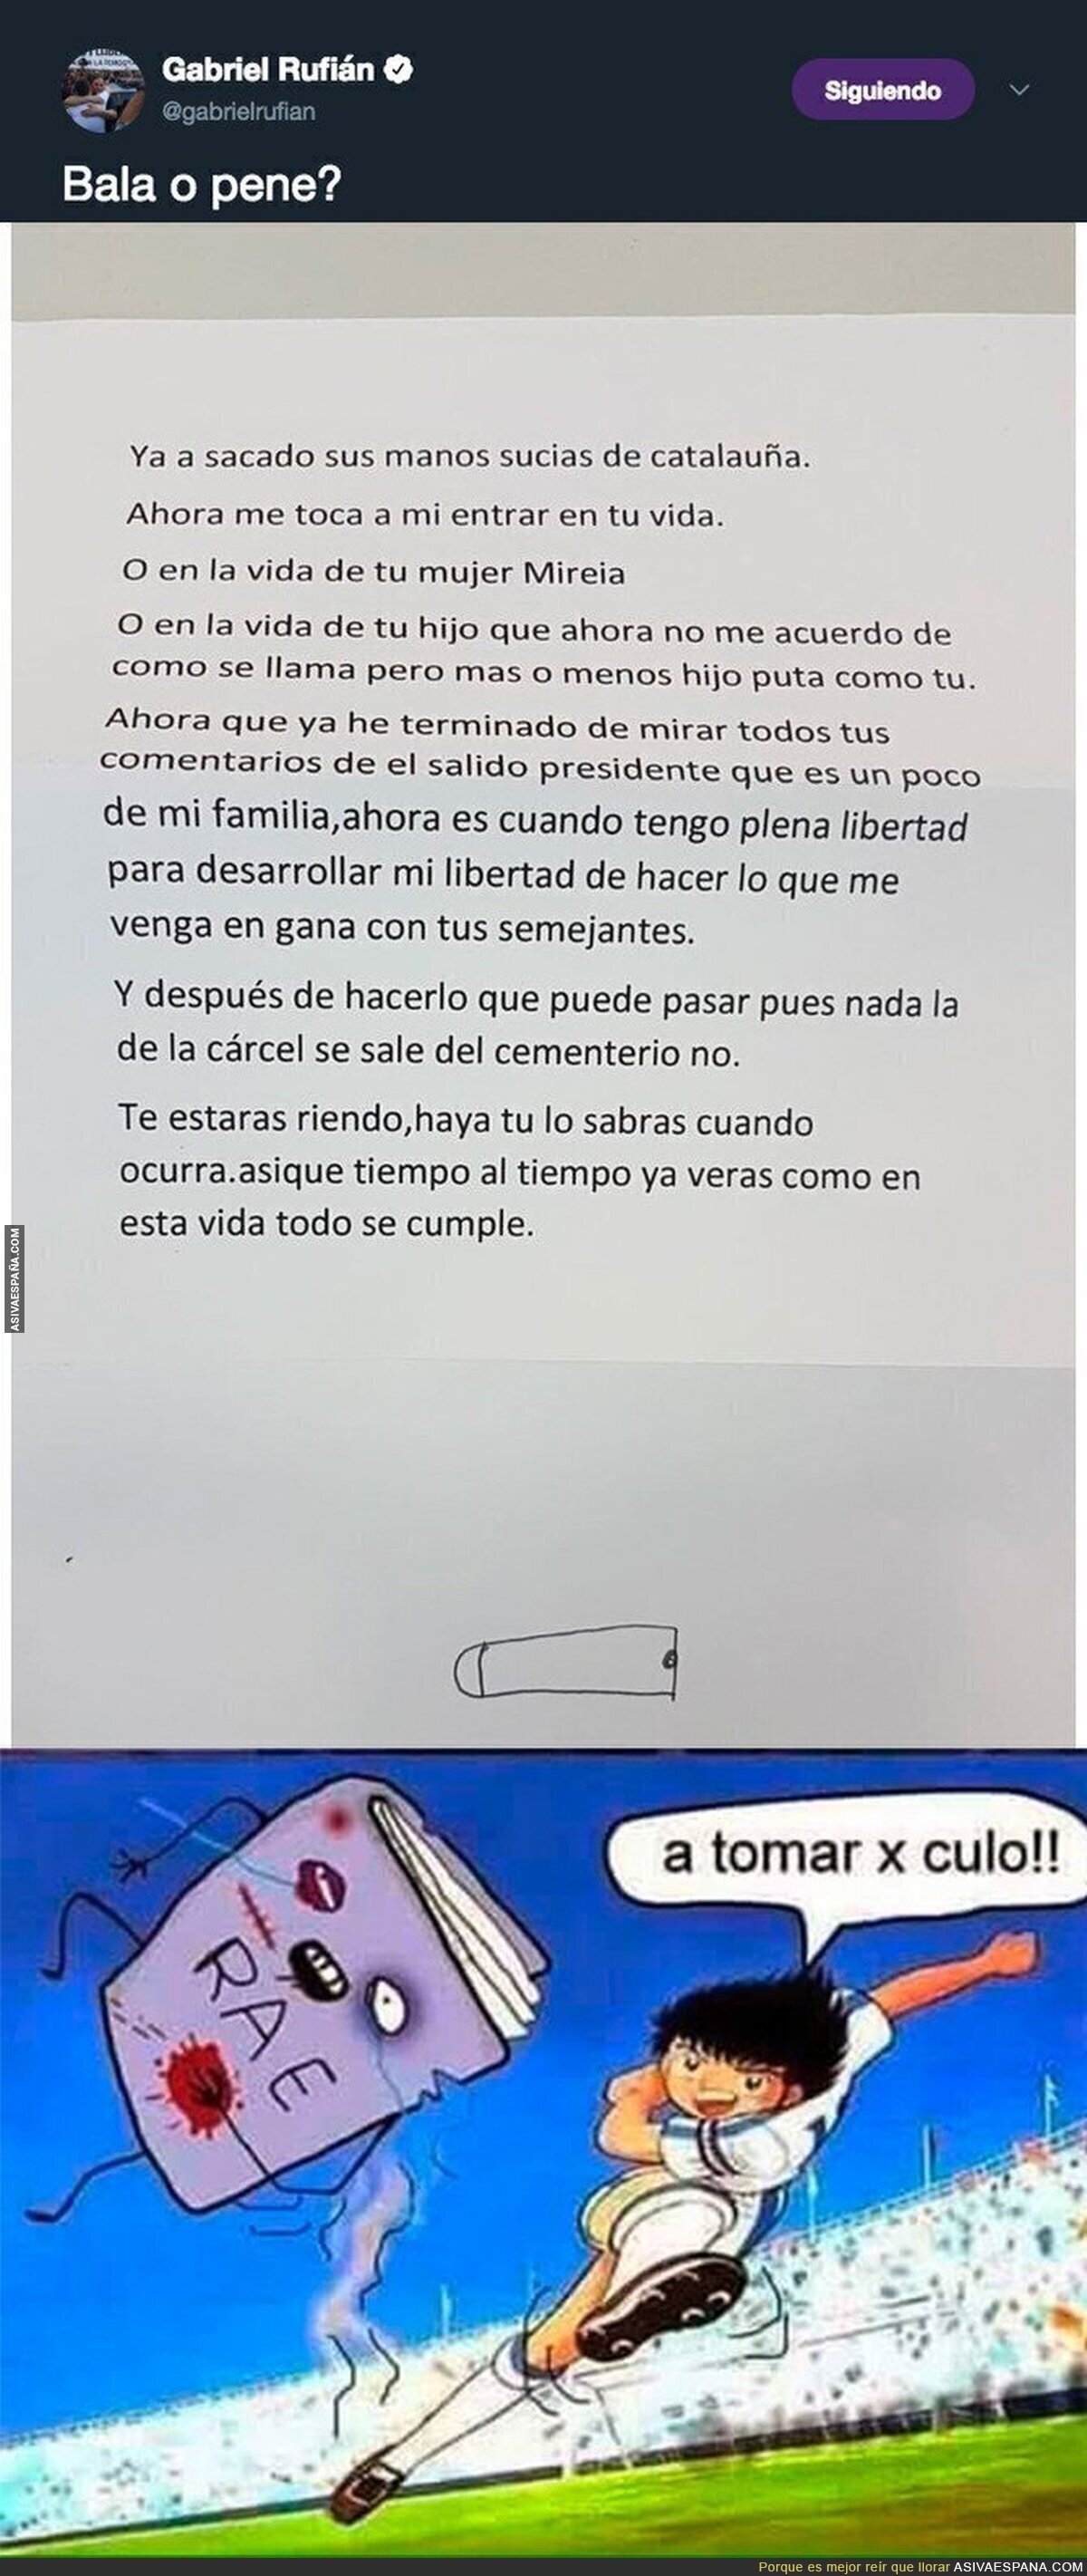 La carta que amenaza de muerte a Gabriel Rufián que ha recibido y compartido en redes sociales